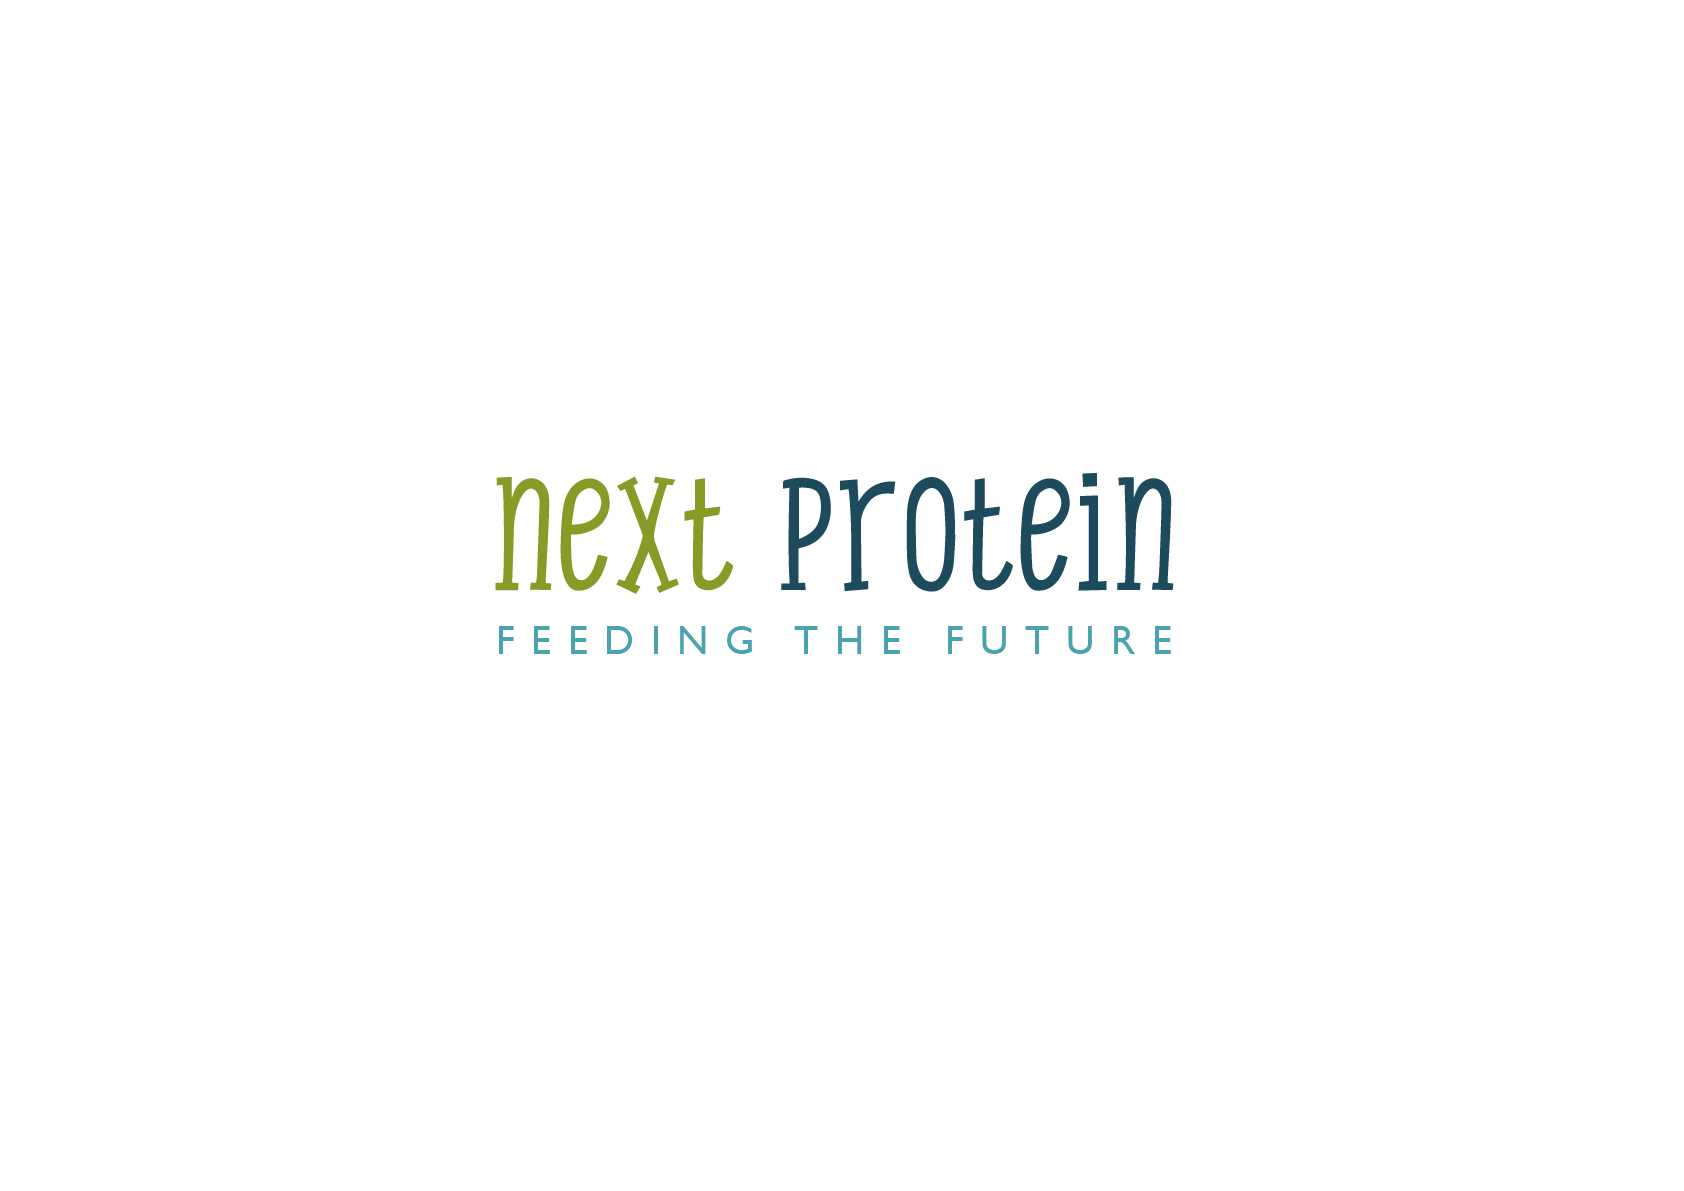 NextProtein_concept1-01.jpg